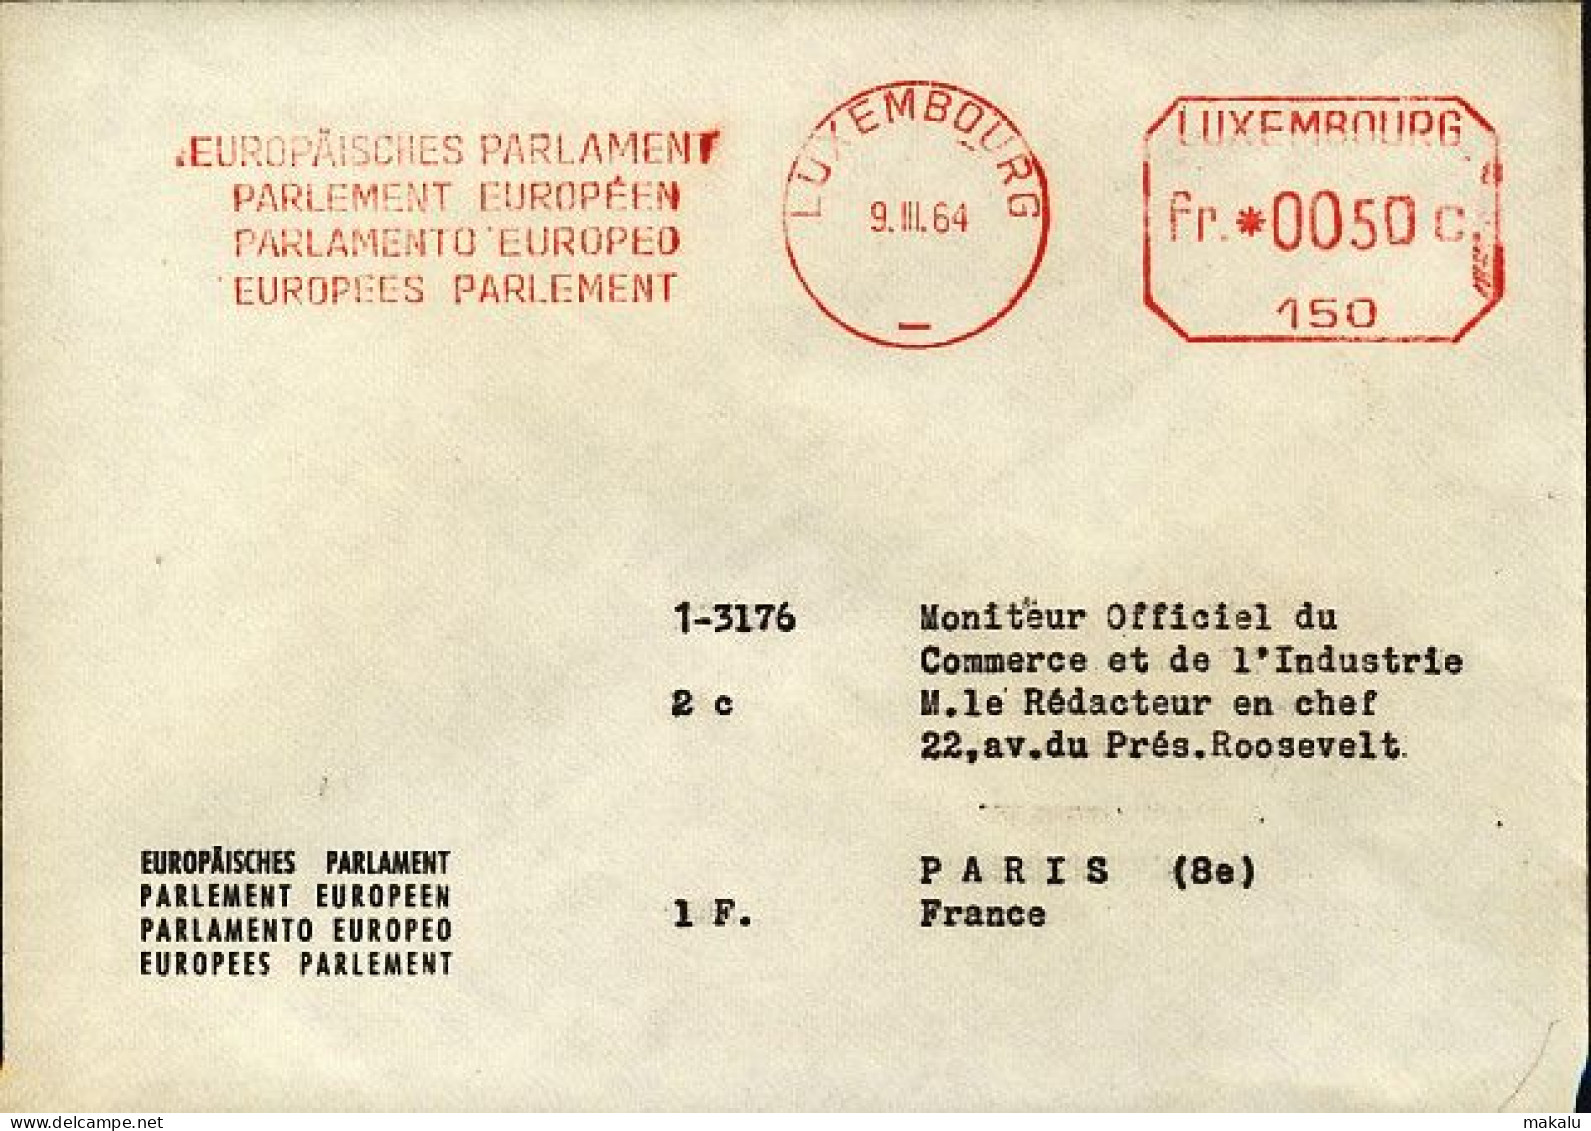 Luxembourg Parlement Européen EMA 1964 - EU-Organe